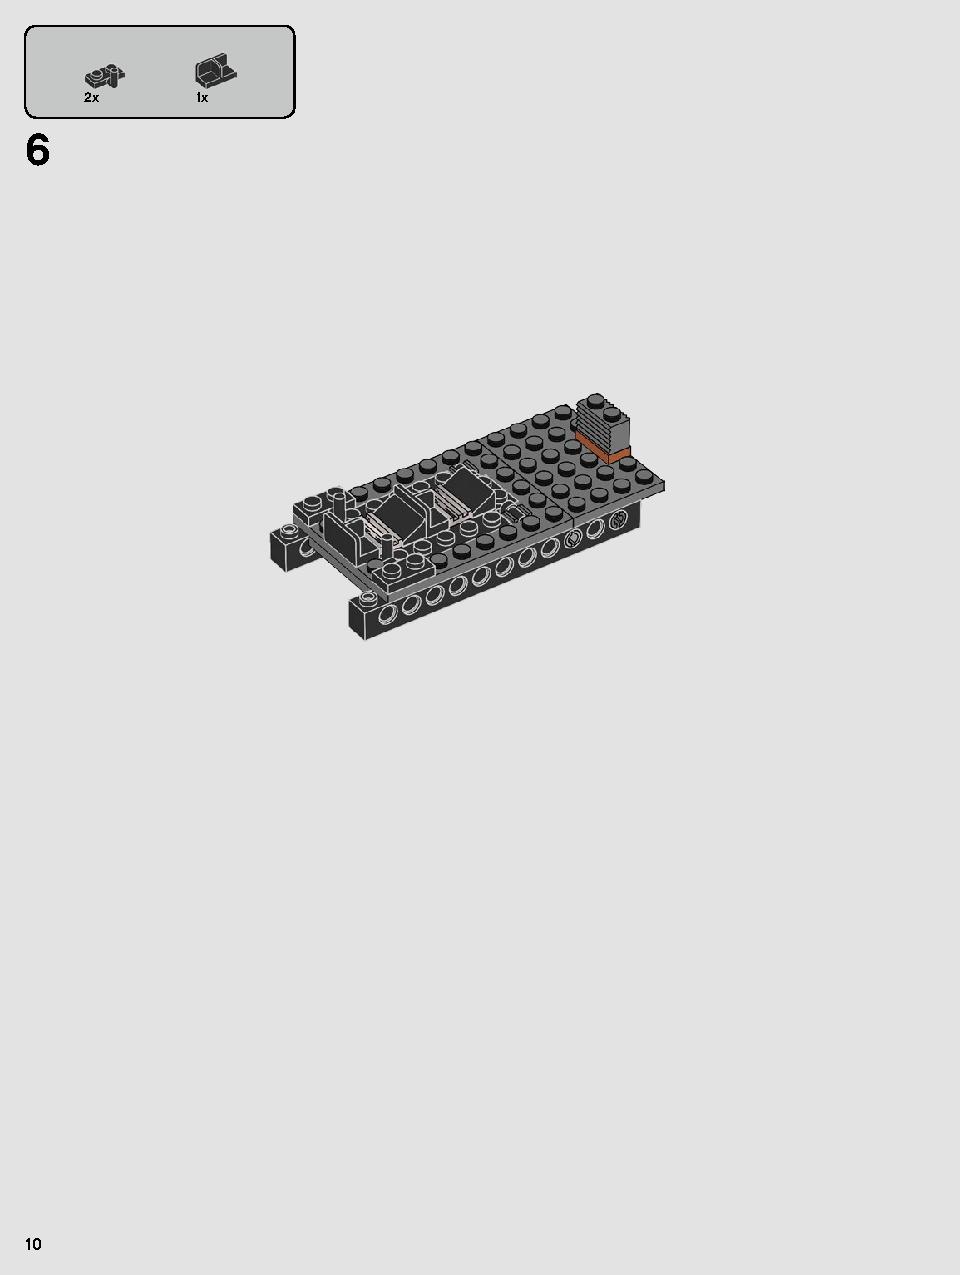 스타워즈 카일로 렌의 셔틀™ 75256 레고 세트 제품정보 레고 조립설명서 10 page